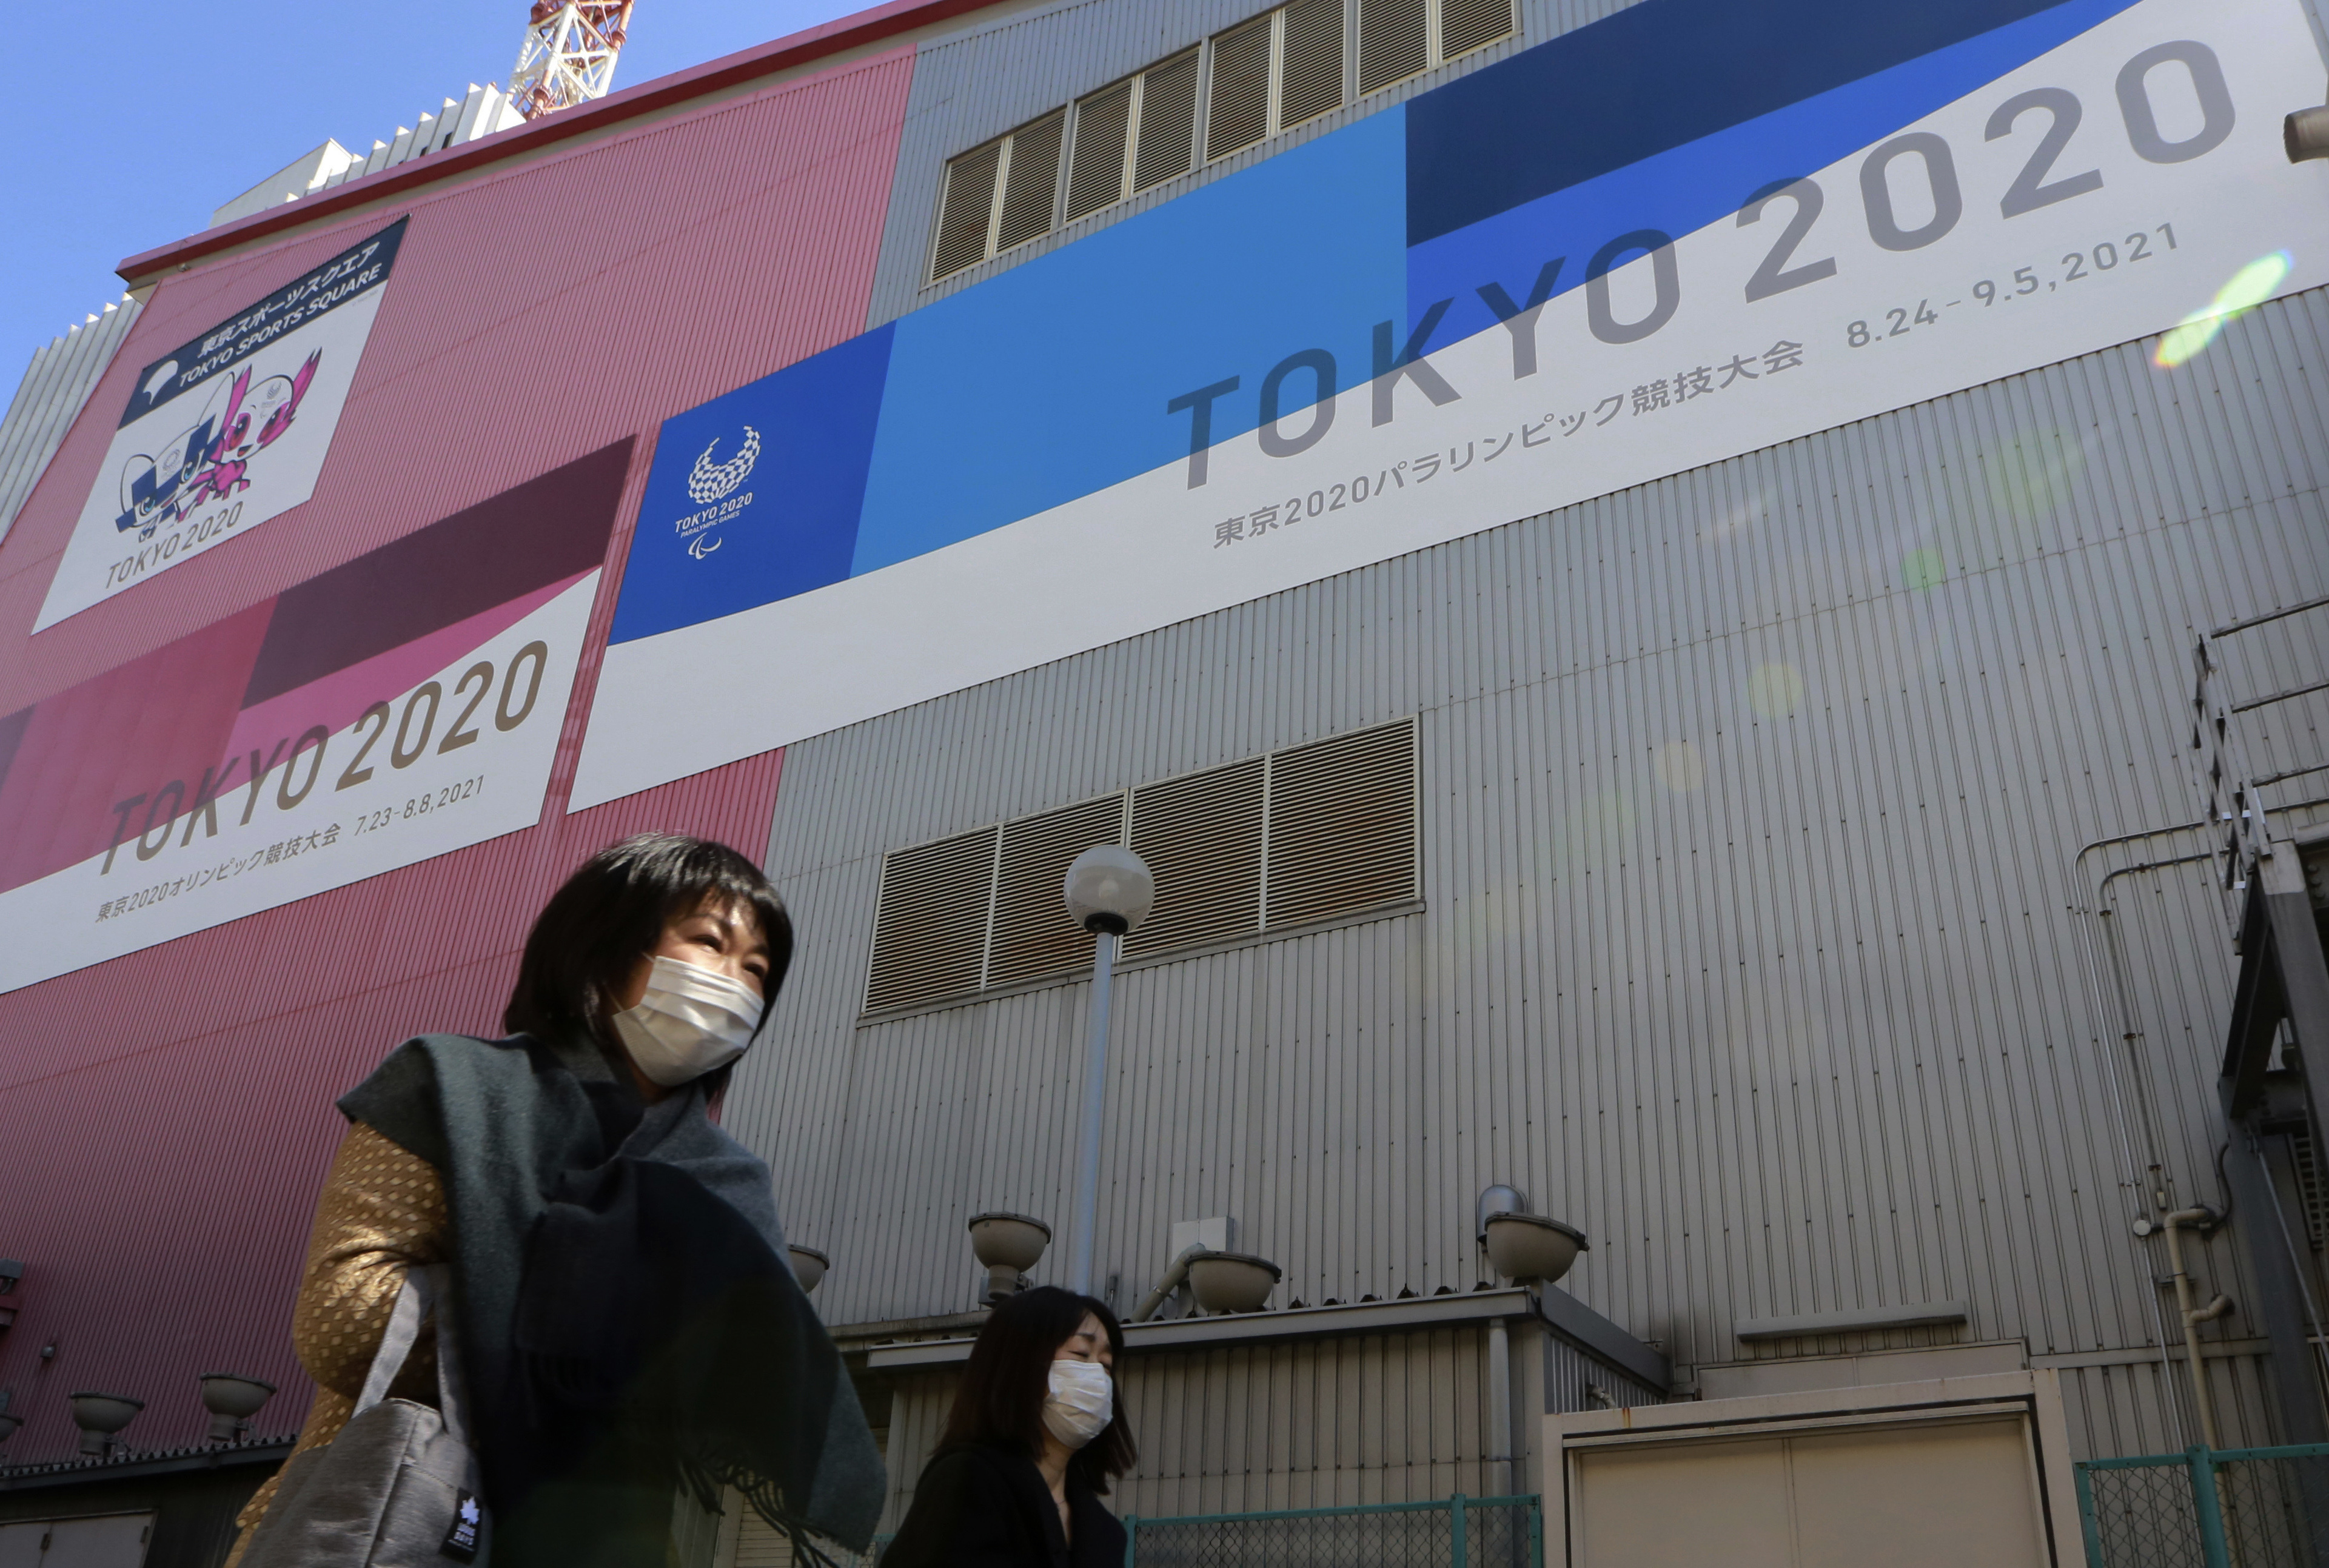 由于冠病疫情，东京奥运会恐怕将成为“大灾难”，图为在东京的奥运宣传海报 。（美联社档案照）

